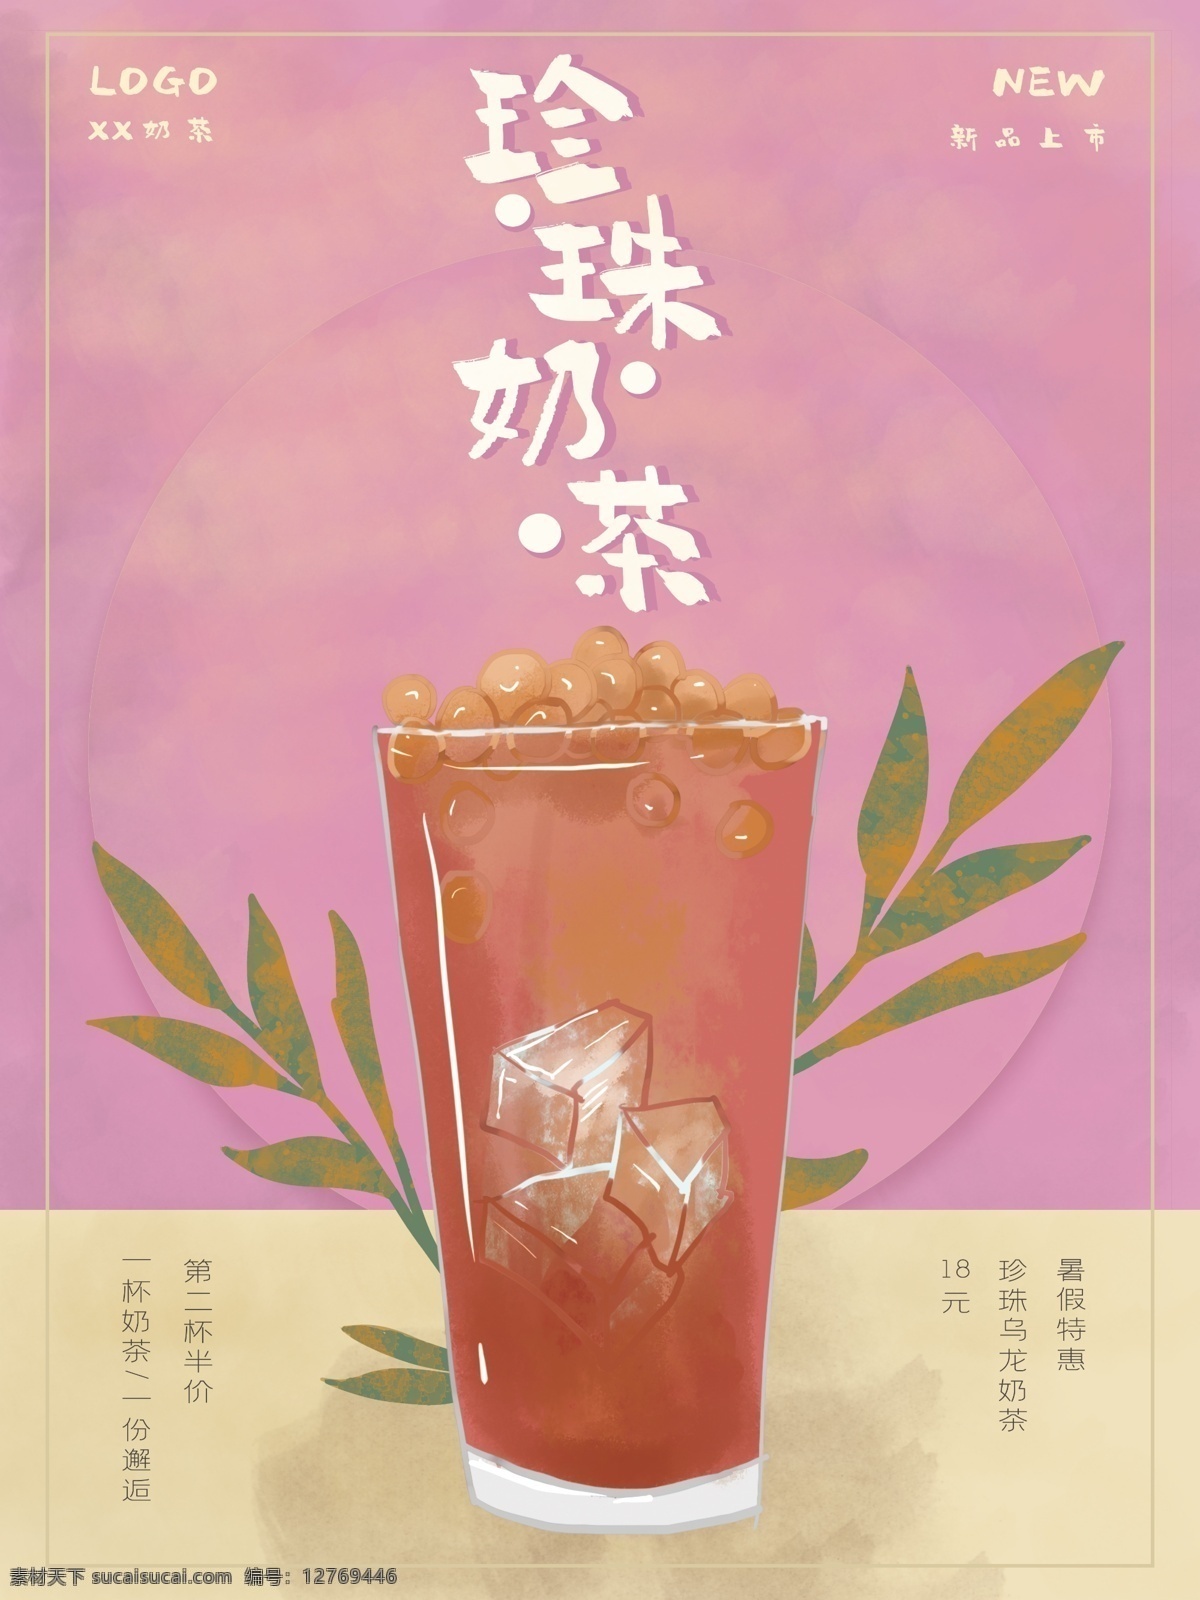 水彩 珍珠 奶茶 新品上市 海报 水彩海报 促销海报 海报素材下载 app轮播 水果 牛奶 茶叶